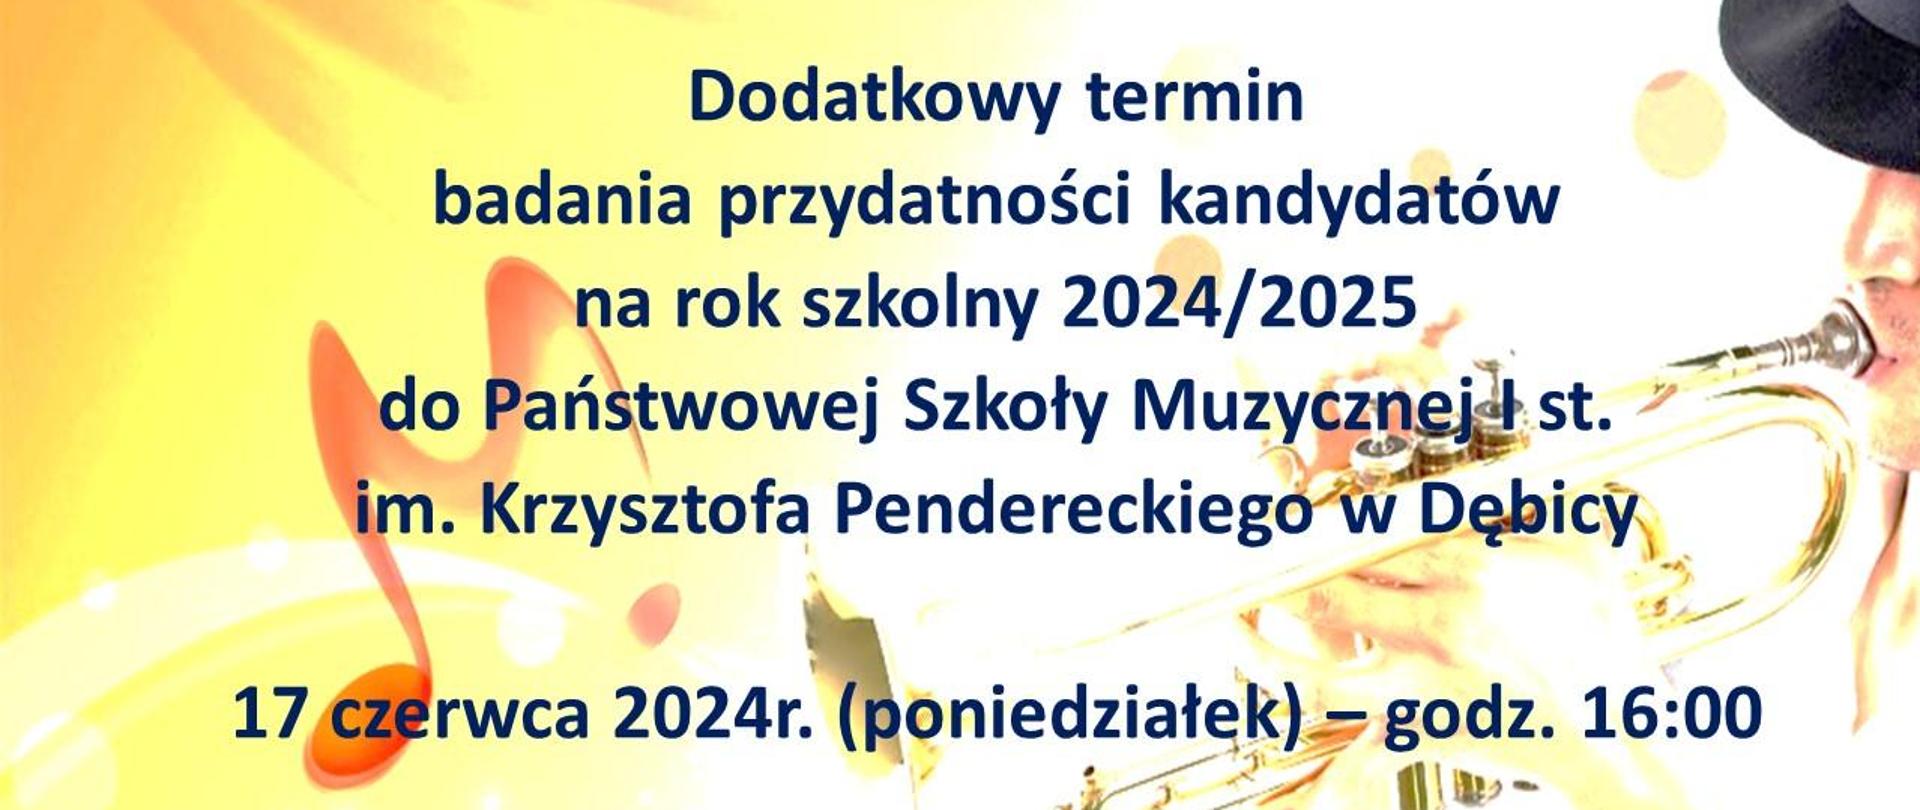 Plakat z informacją o dodatkowym terminie badania przydatności kandydatów na rok szkolny 2024/2025 do PSM I st. w Dębicy, w tle nuty oraz grający trębacz